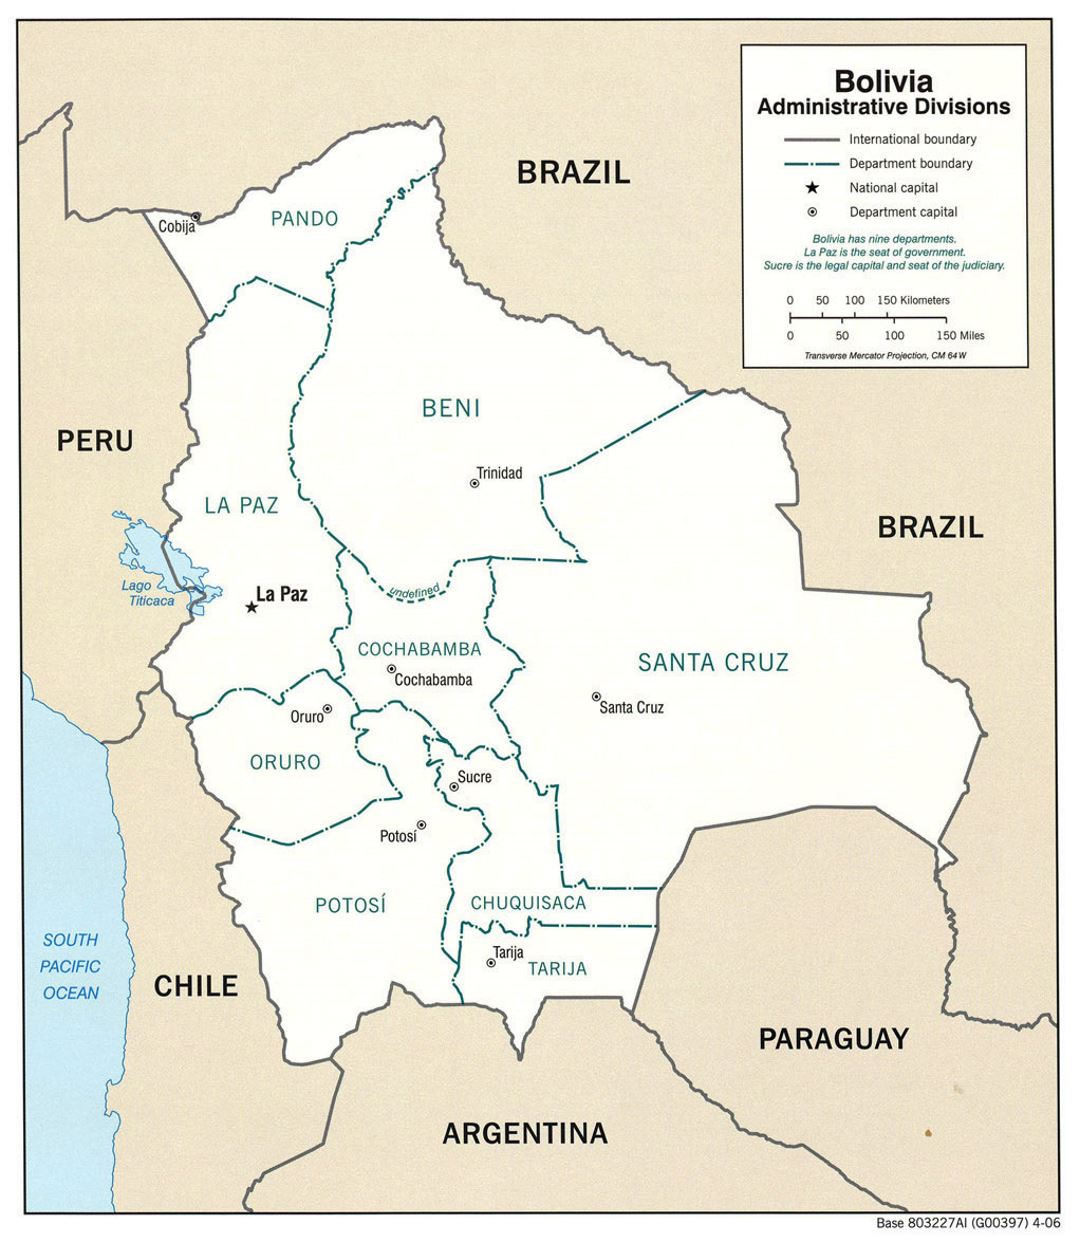 Большая карта административных делений Боливии с крупными городами - 2006